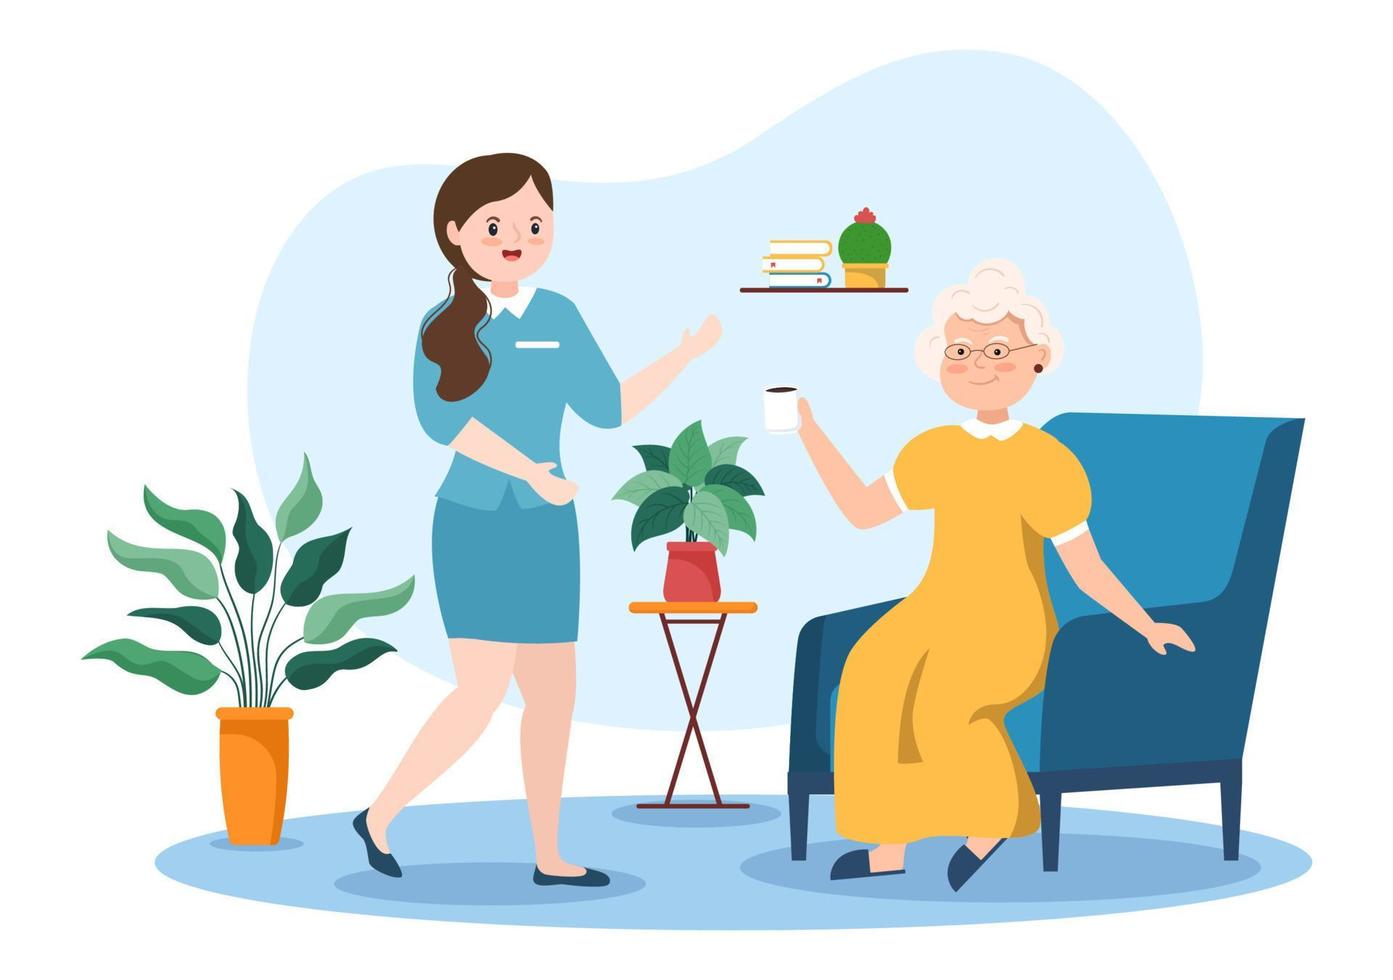 illustrazione piatta del fumetto disegnato a mano dei servizi di assistenza agli anziani con il caregiver, la casa di cura, la vita assistita e il design di supporto vettore